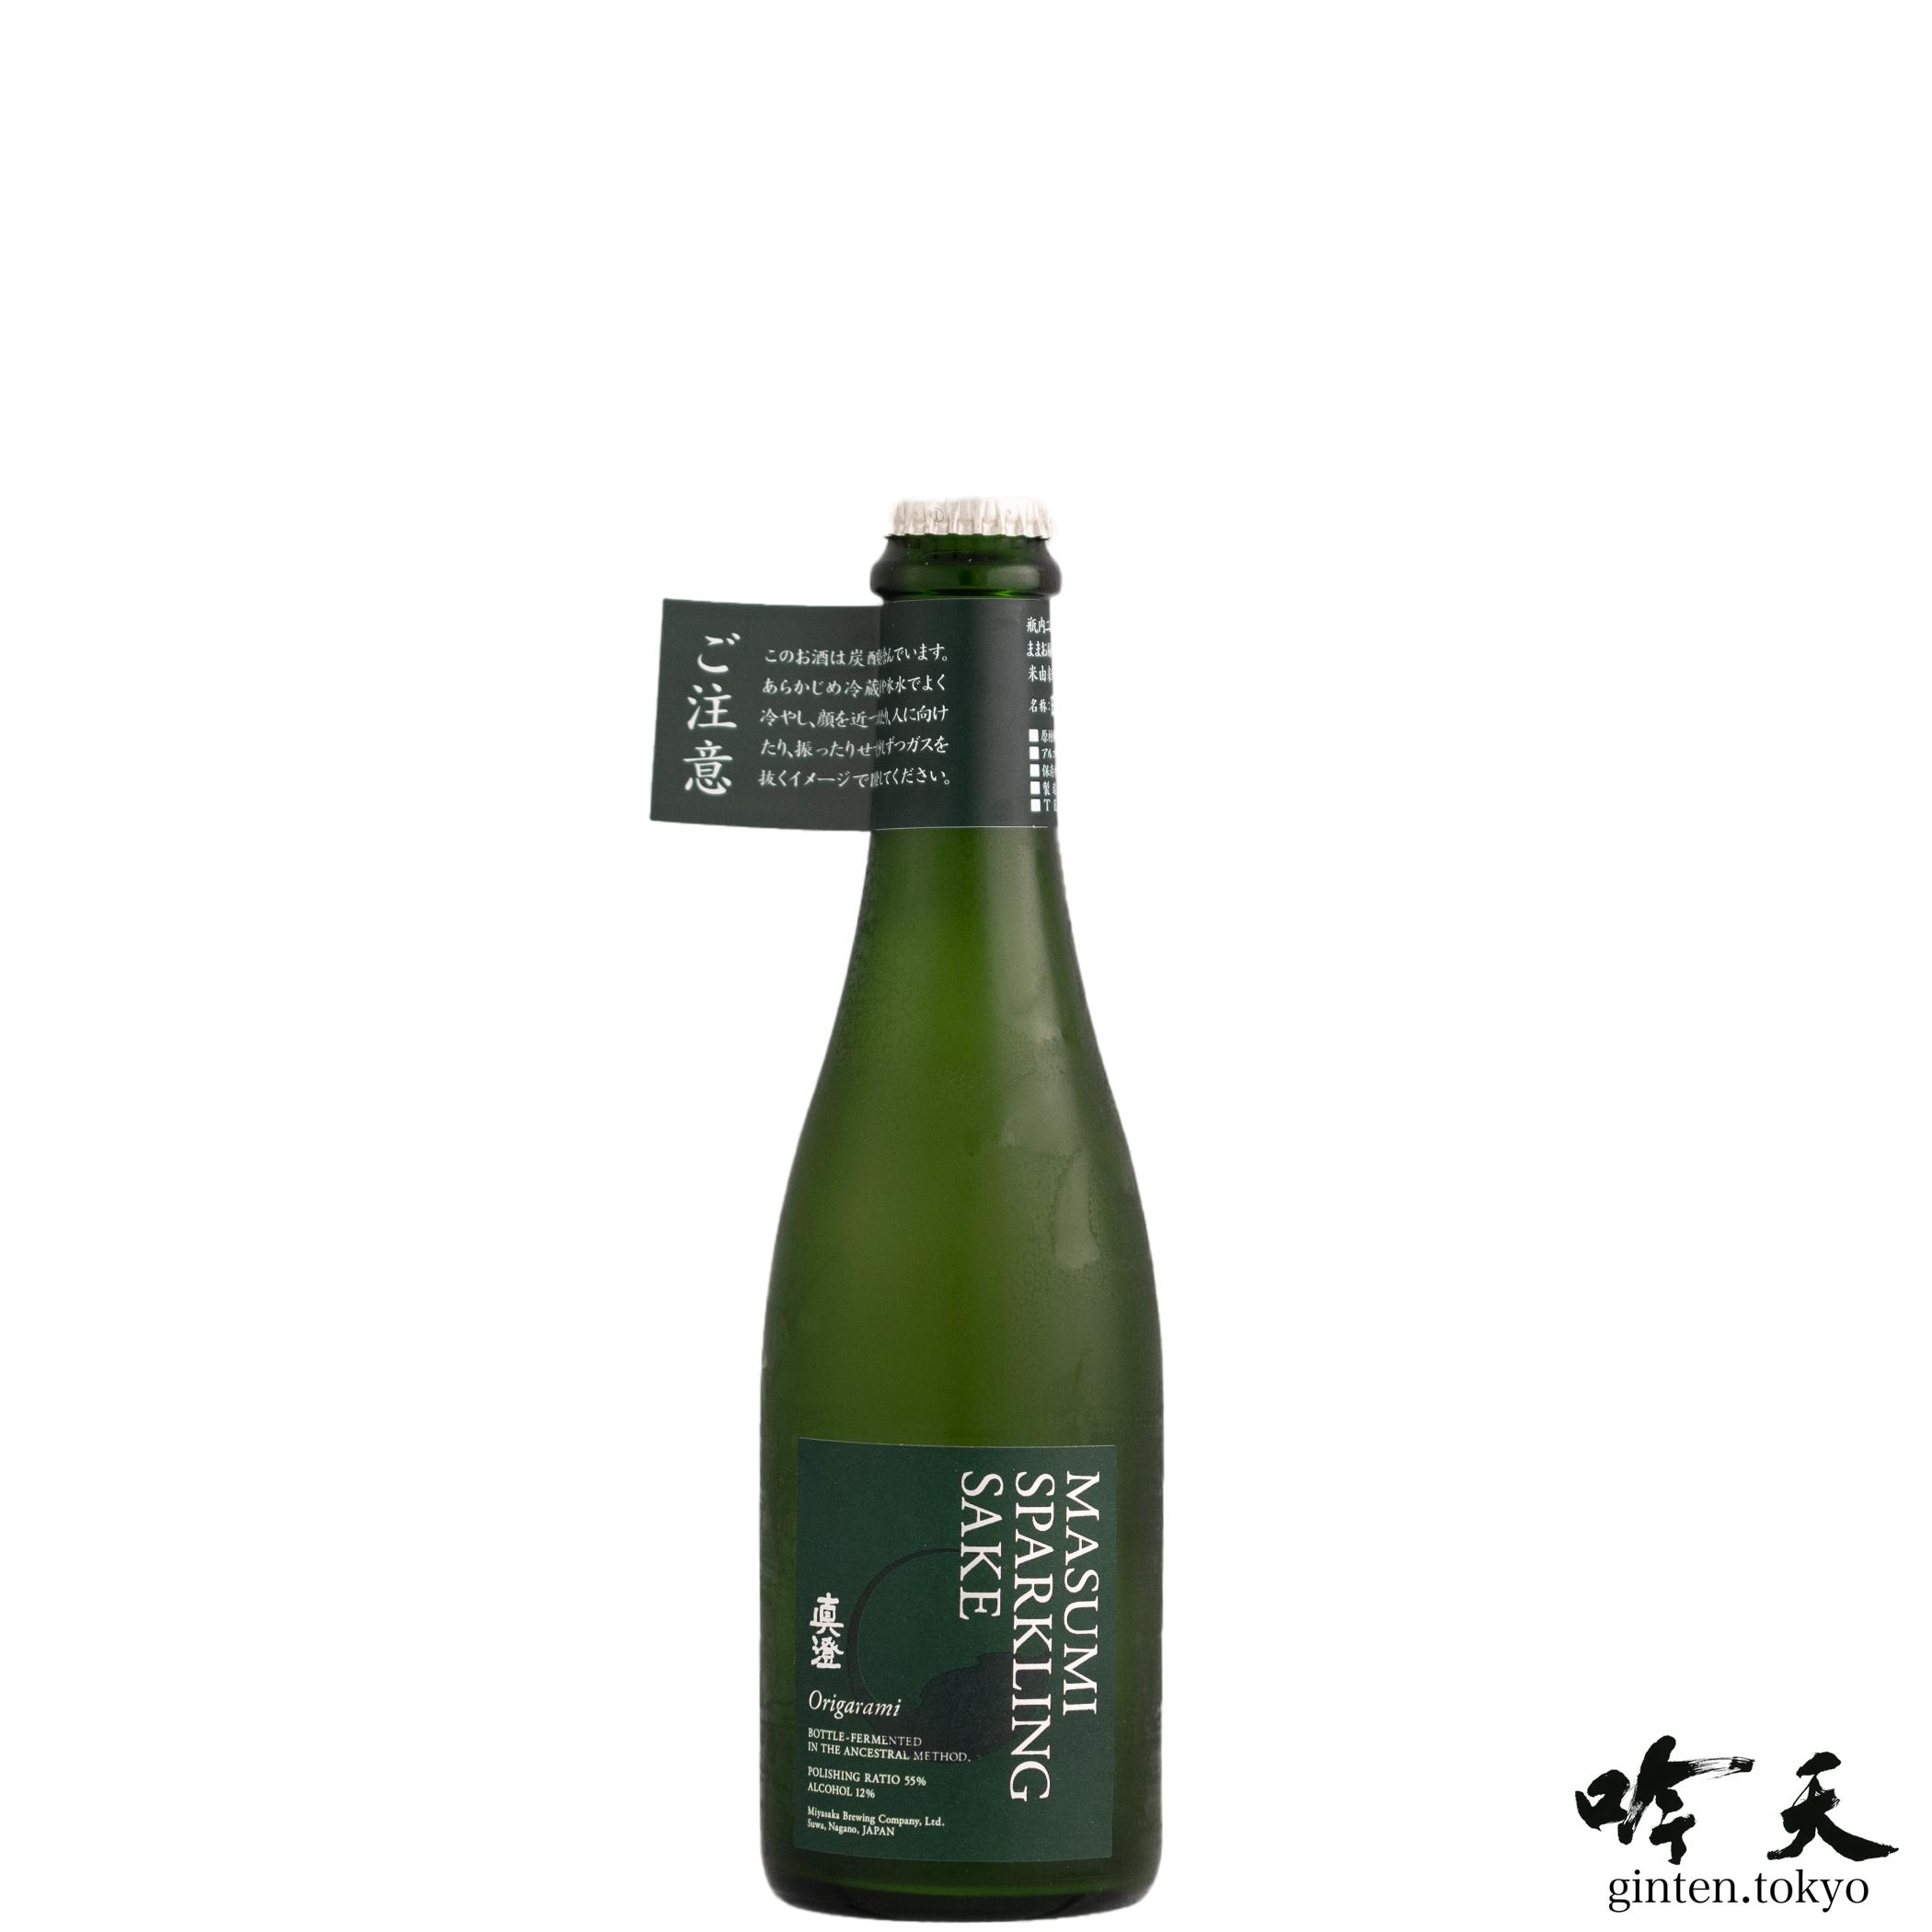 長野県の宮坂醸造が醸す真澄スパークリングORIGARAMI375mlです。